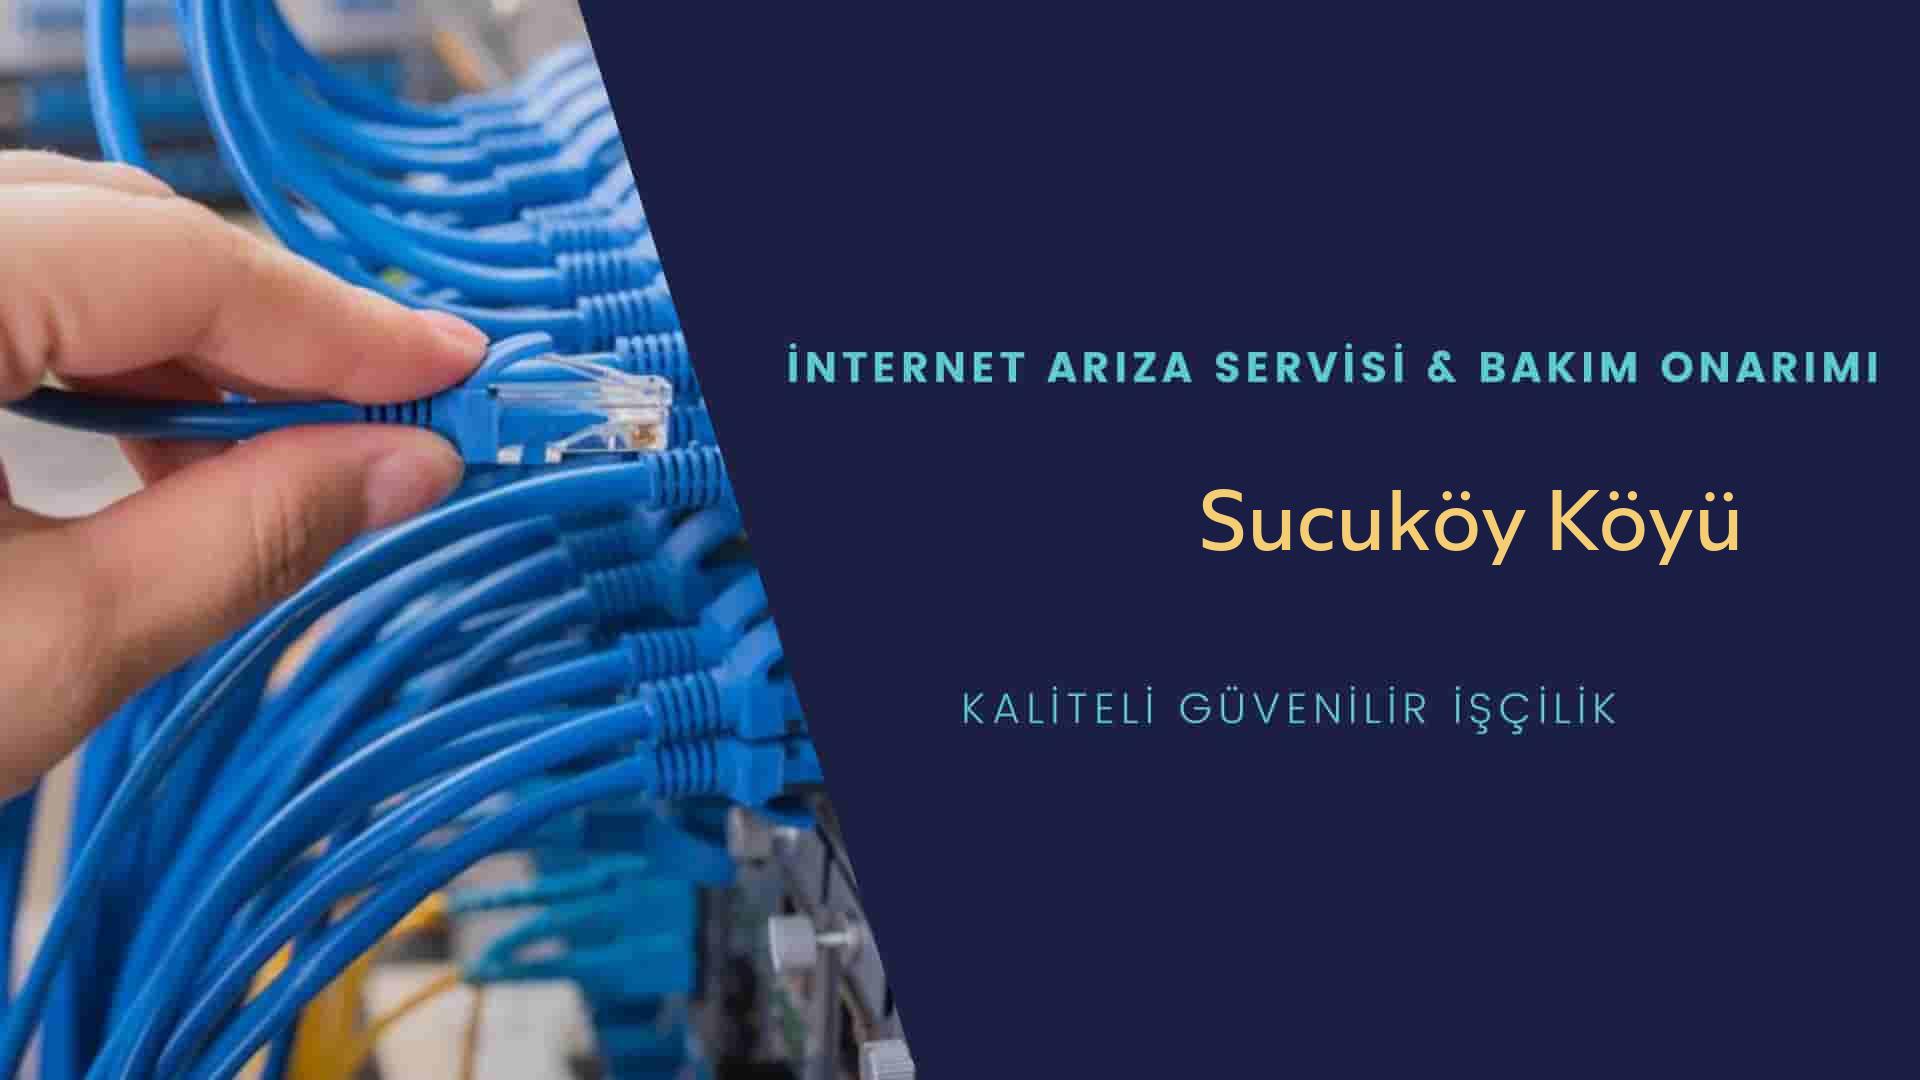 Sucuköy Köyü internet kablosu çekimi yapan yerler veya elektrikçiler mi? arıyorsunuz doğru yerdesiniz o zaman sizlere 7/24 yardımcı olacak profesyonel ustalarımız bir telefon kadar yakındır size.